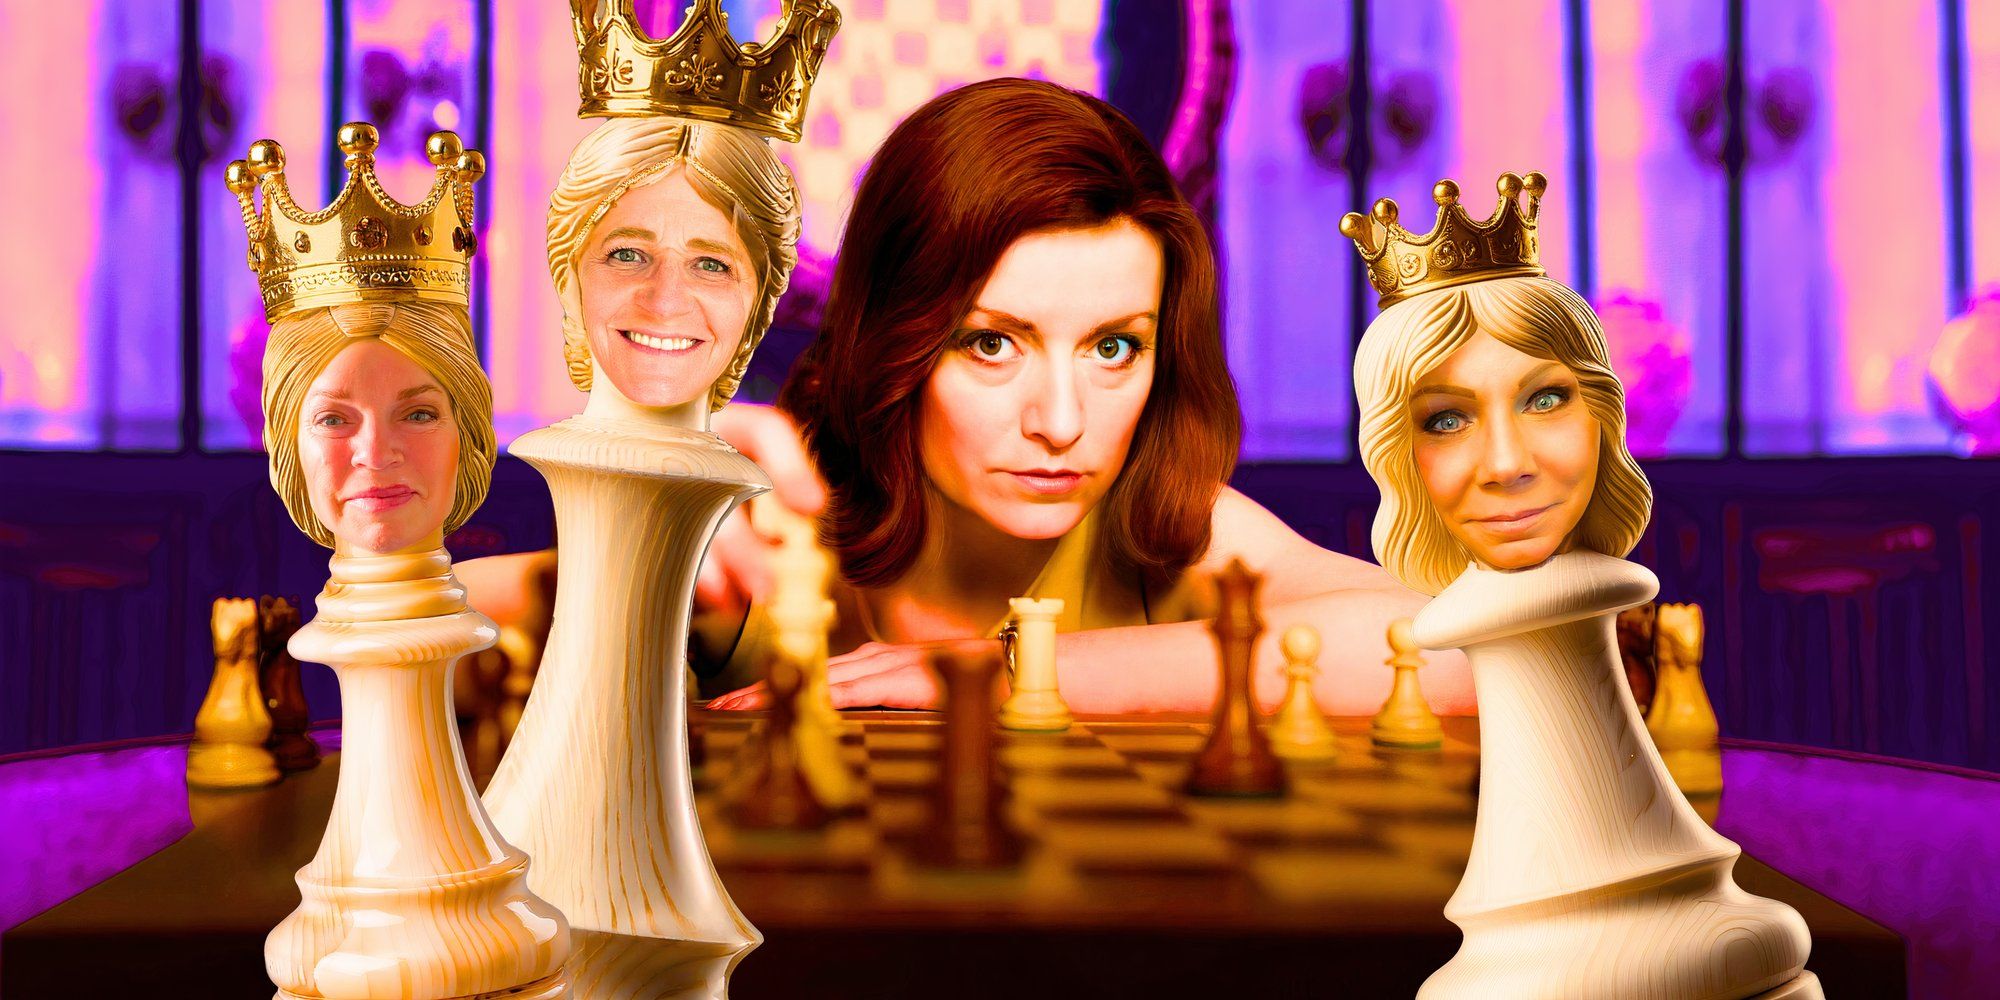 Esposas hermanas: cómo Robyn Brown eliminó tres reinas del tablero de ajedrez de la familia Brown